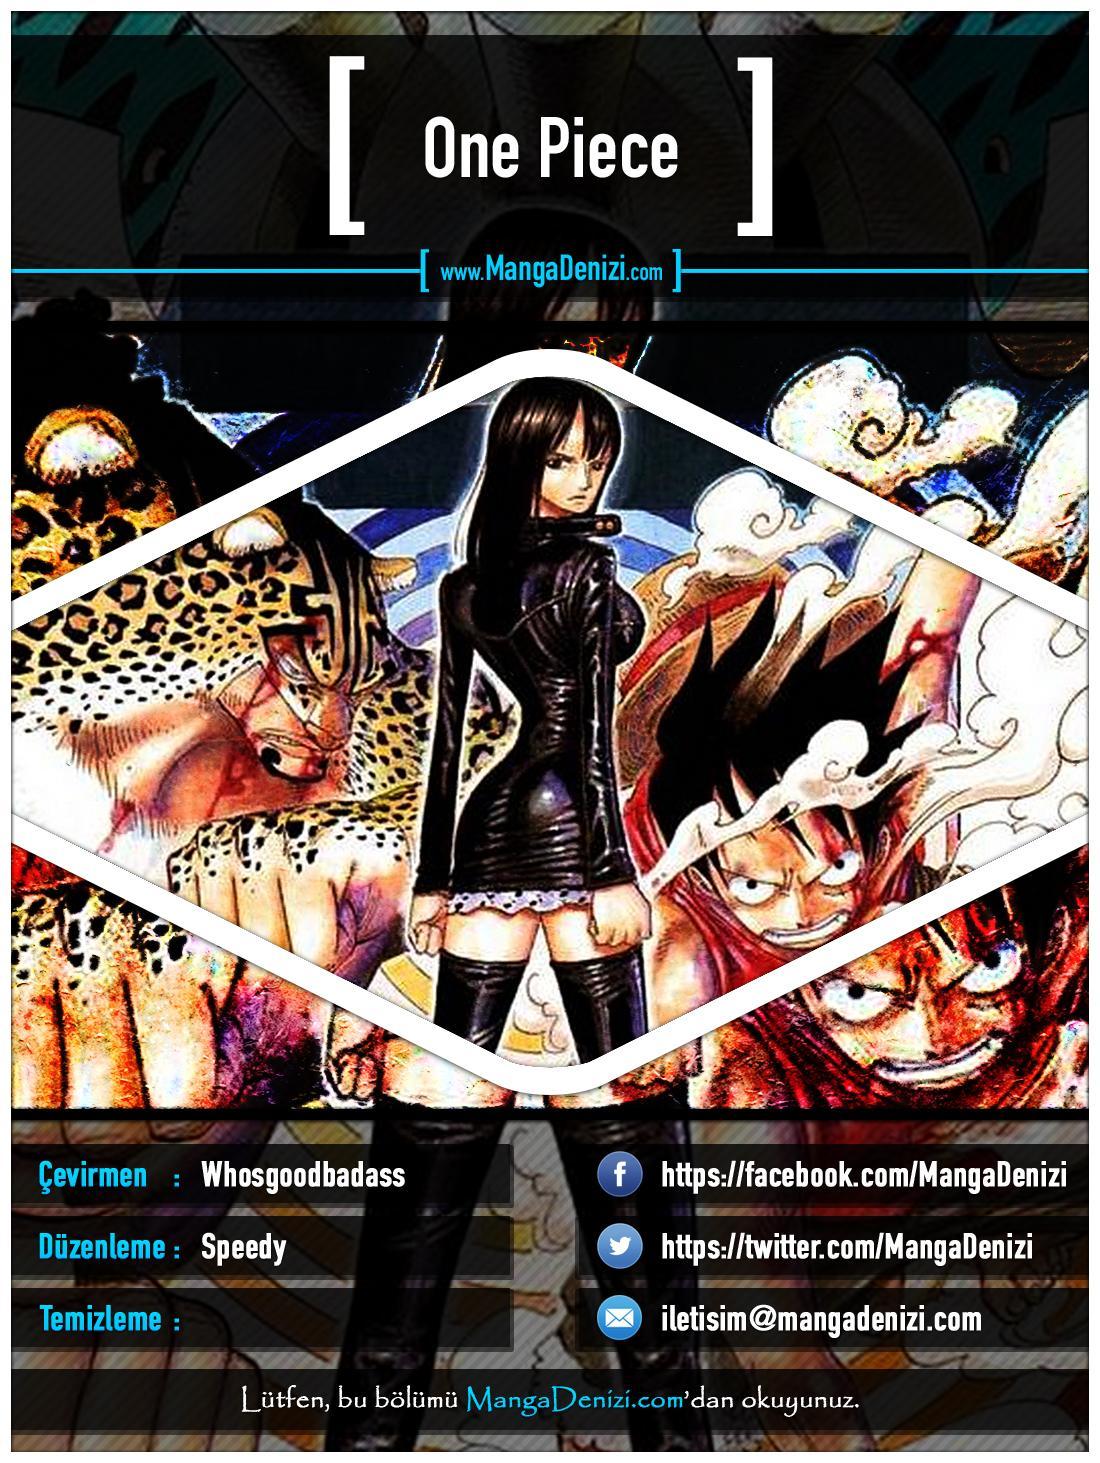 One Piece [Renkli] mangasının 0352 bölümünün 1. sayfasını okuyorsunuz.